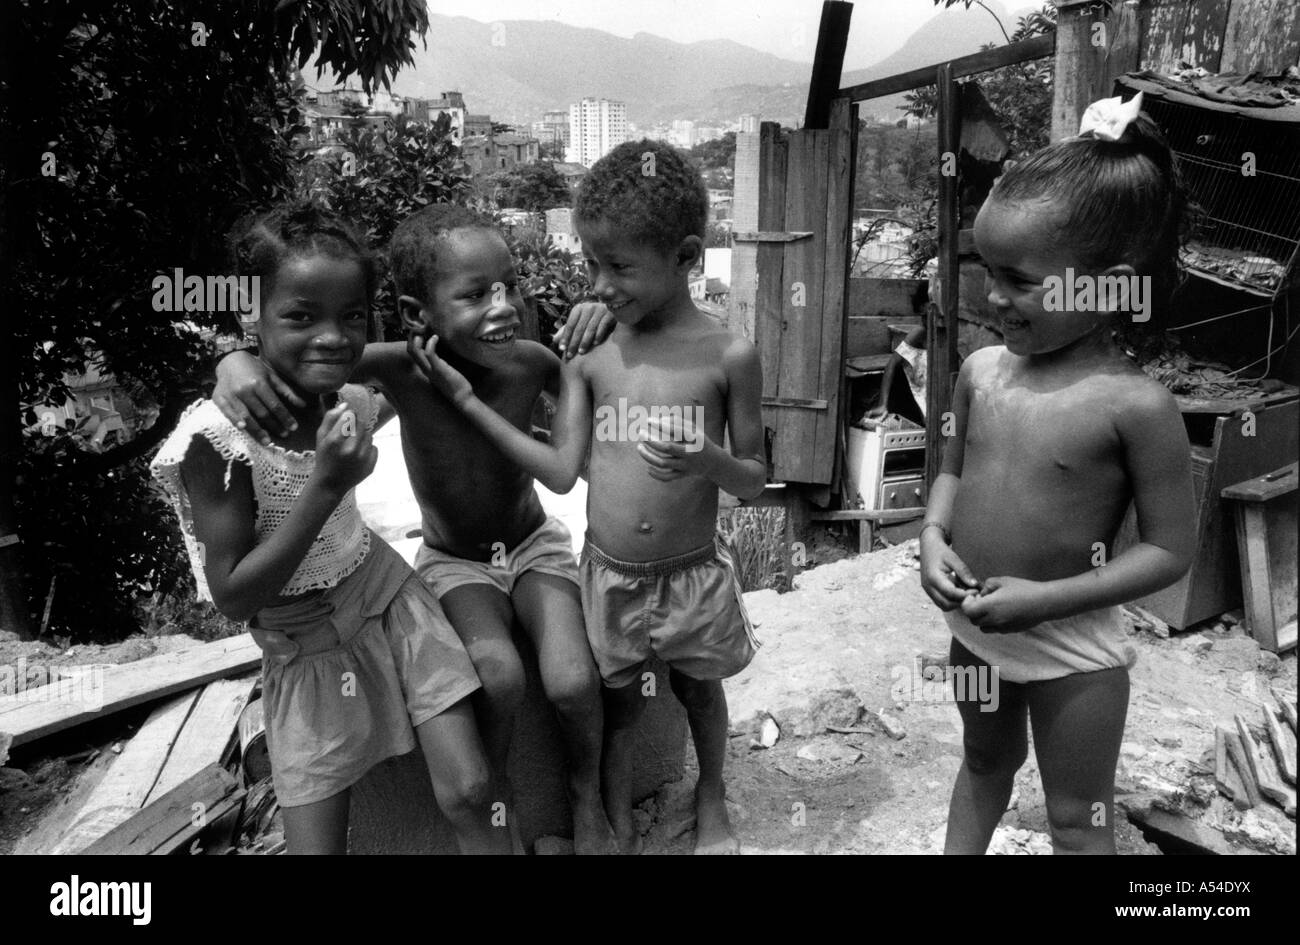 Painet hn1963 555 in bianco e nero di bambini residenti delle baraccopoli di Rio Janeiro brasile paese nazione in via di sviluppo meno economicamente Foto Stock